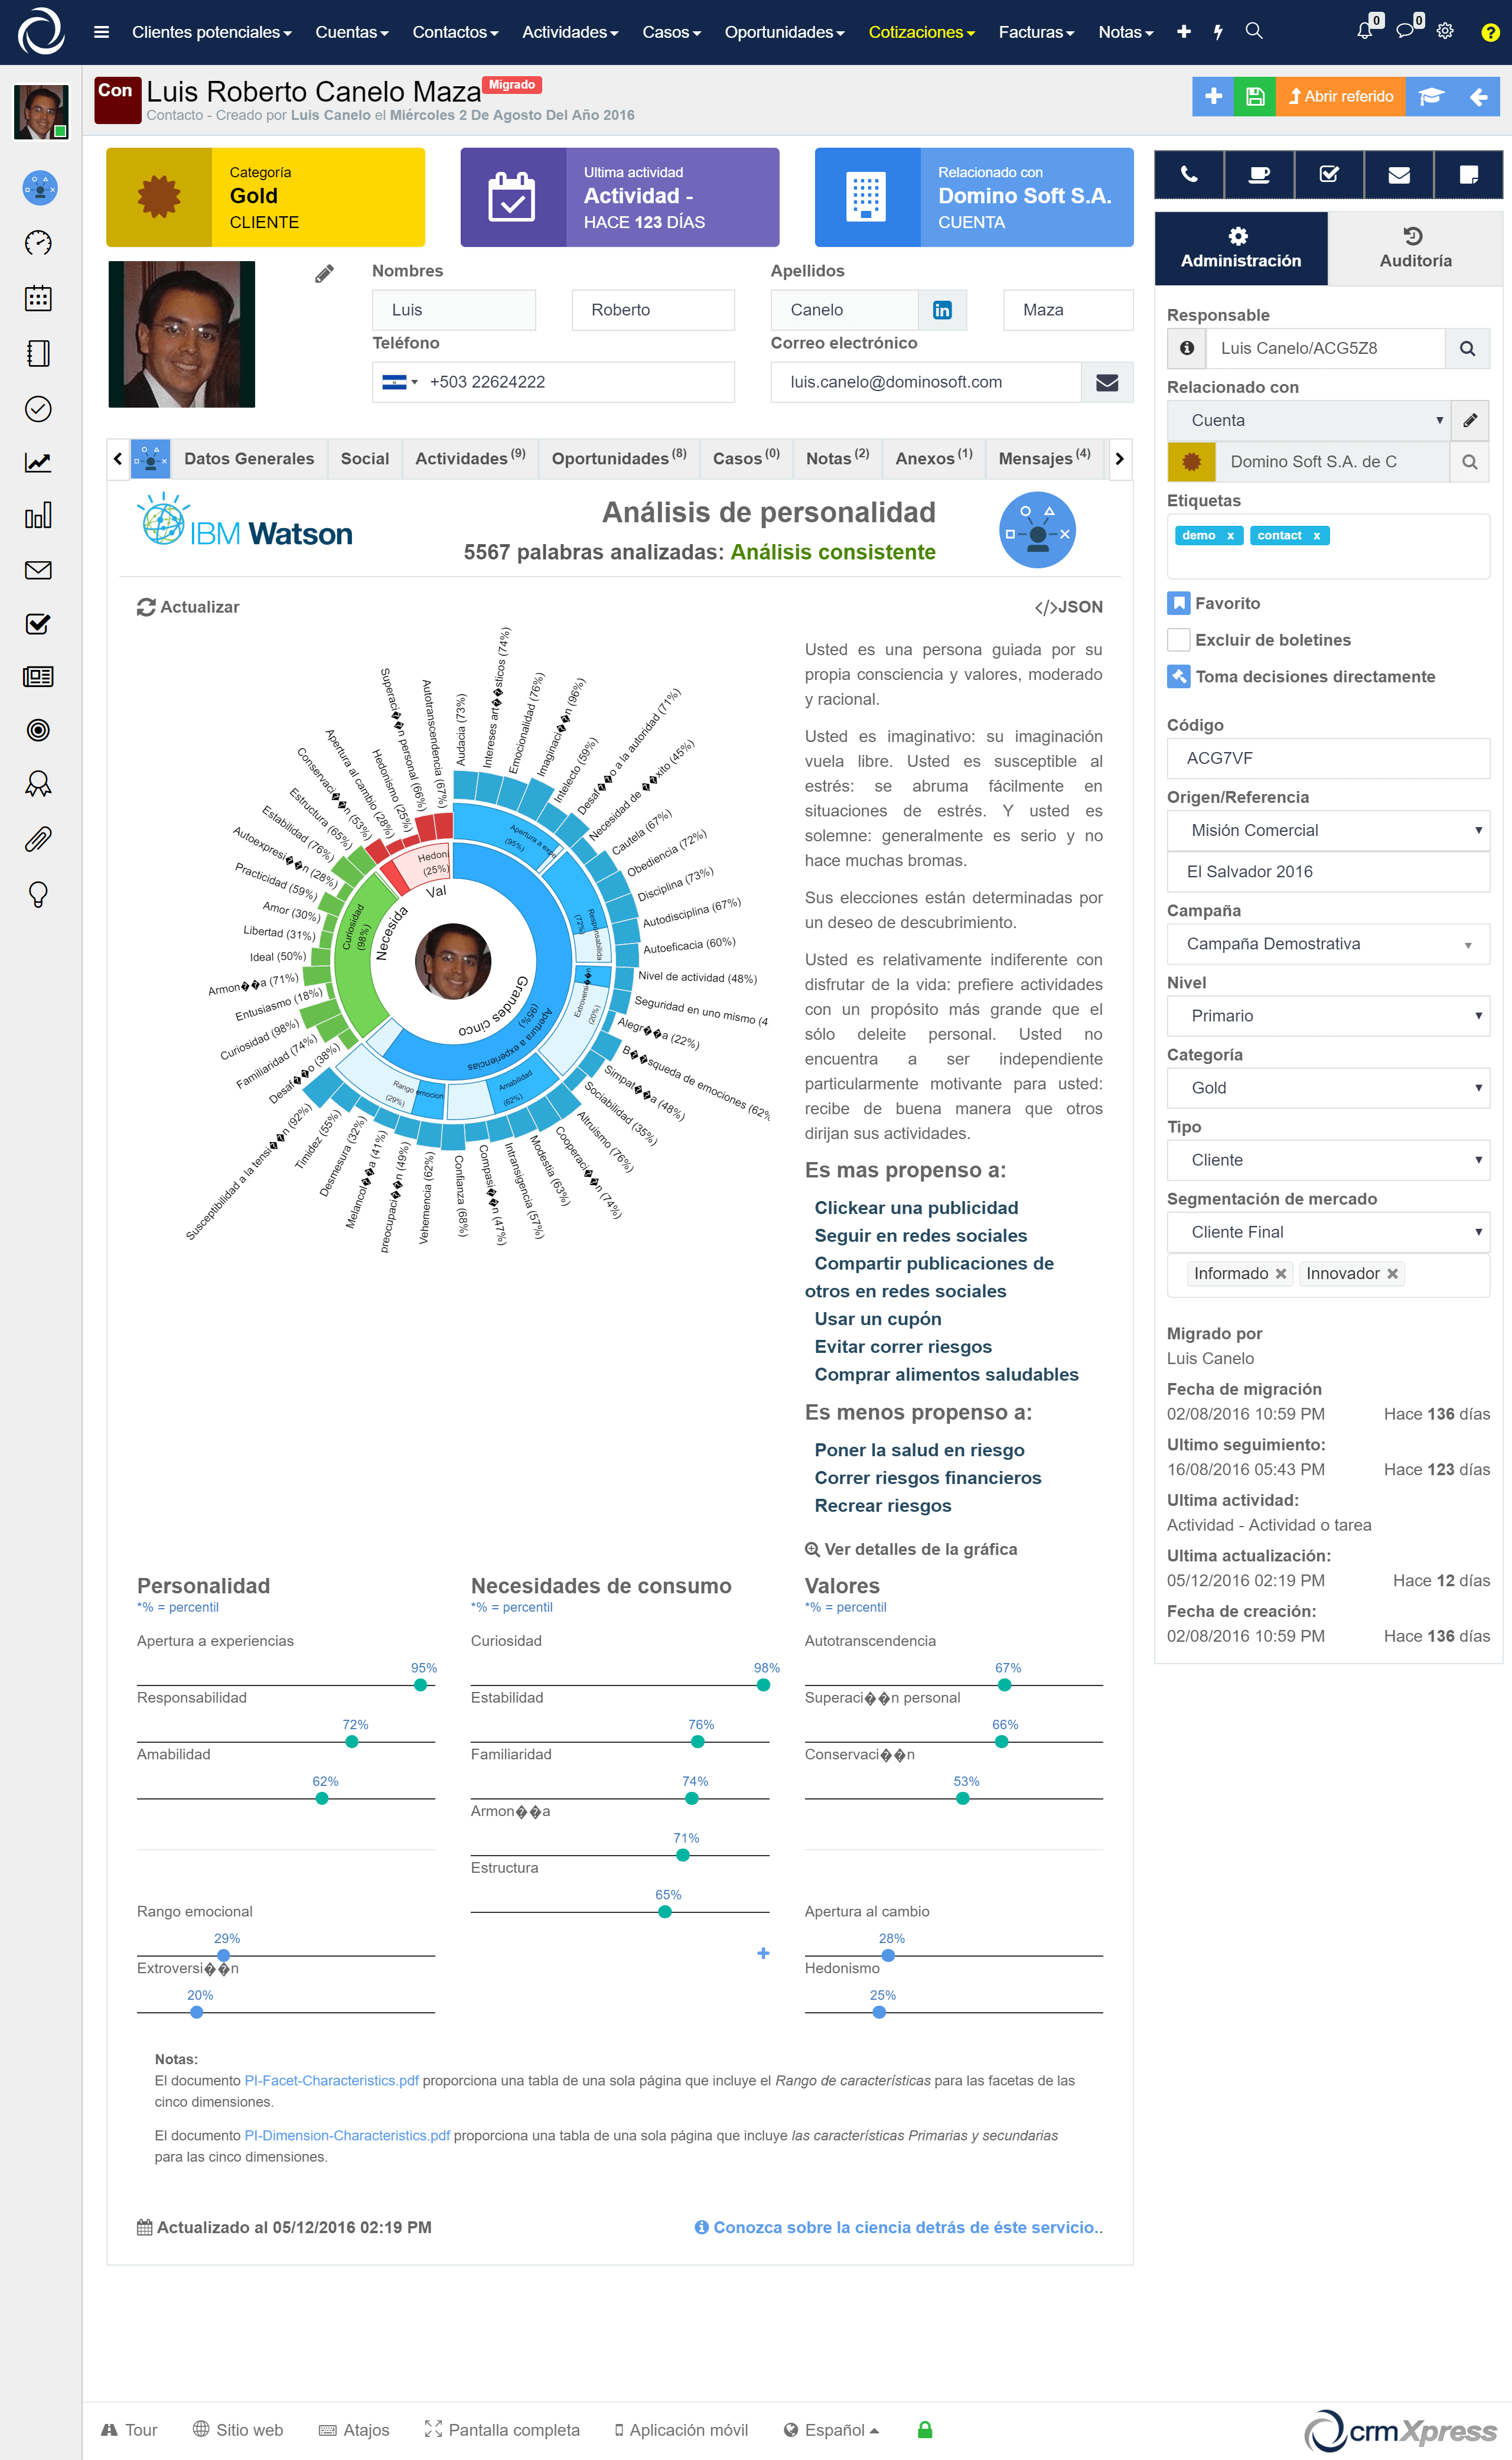 Tendencias de consumo - IBM Watson